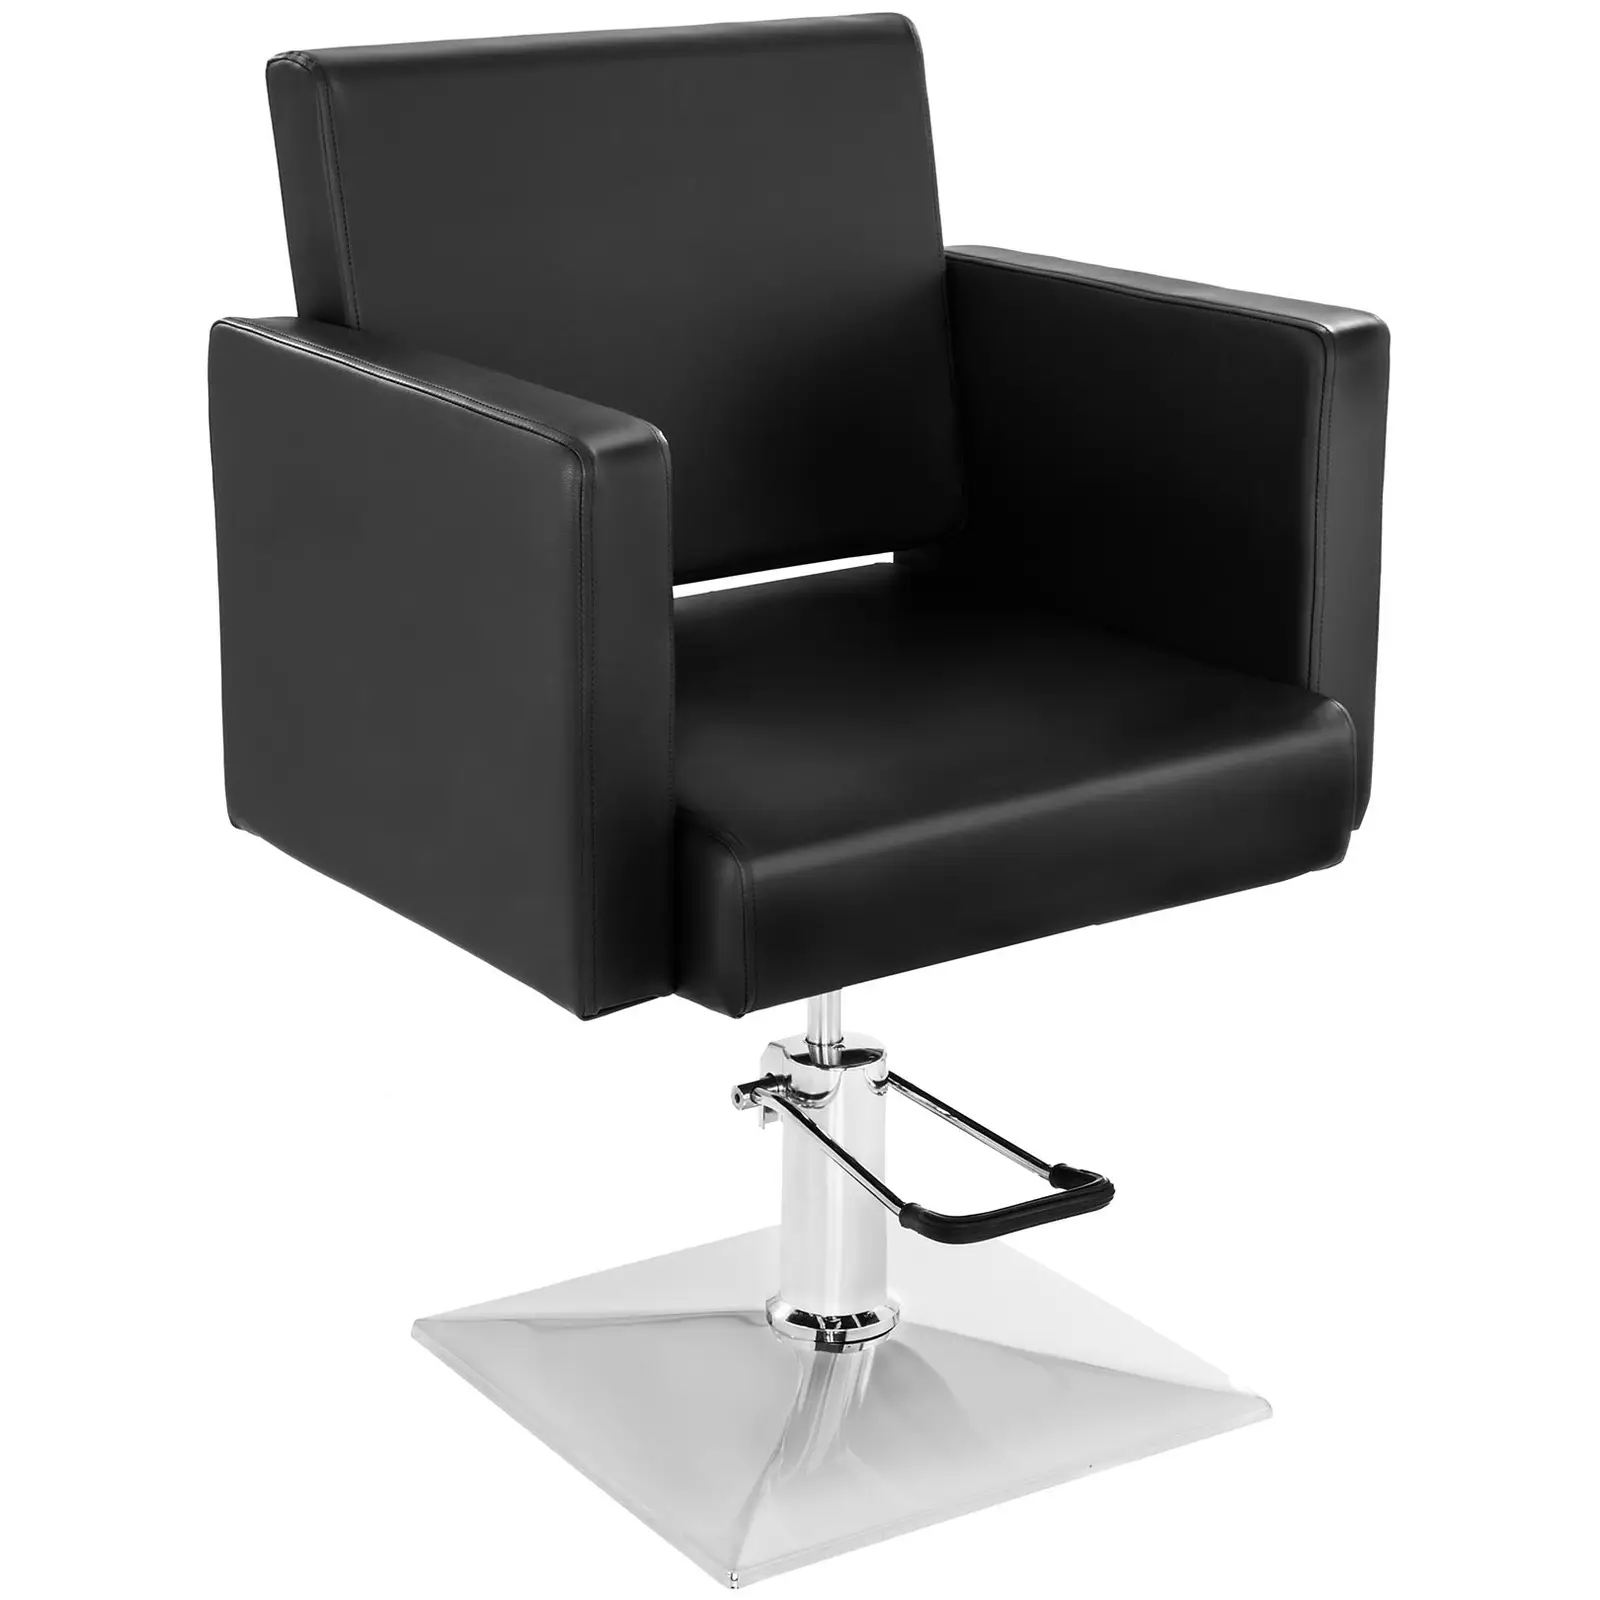 Fodrász szék - 200 kg - Fekete